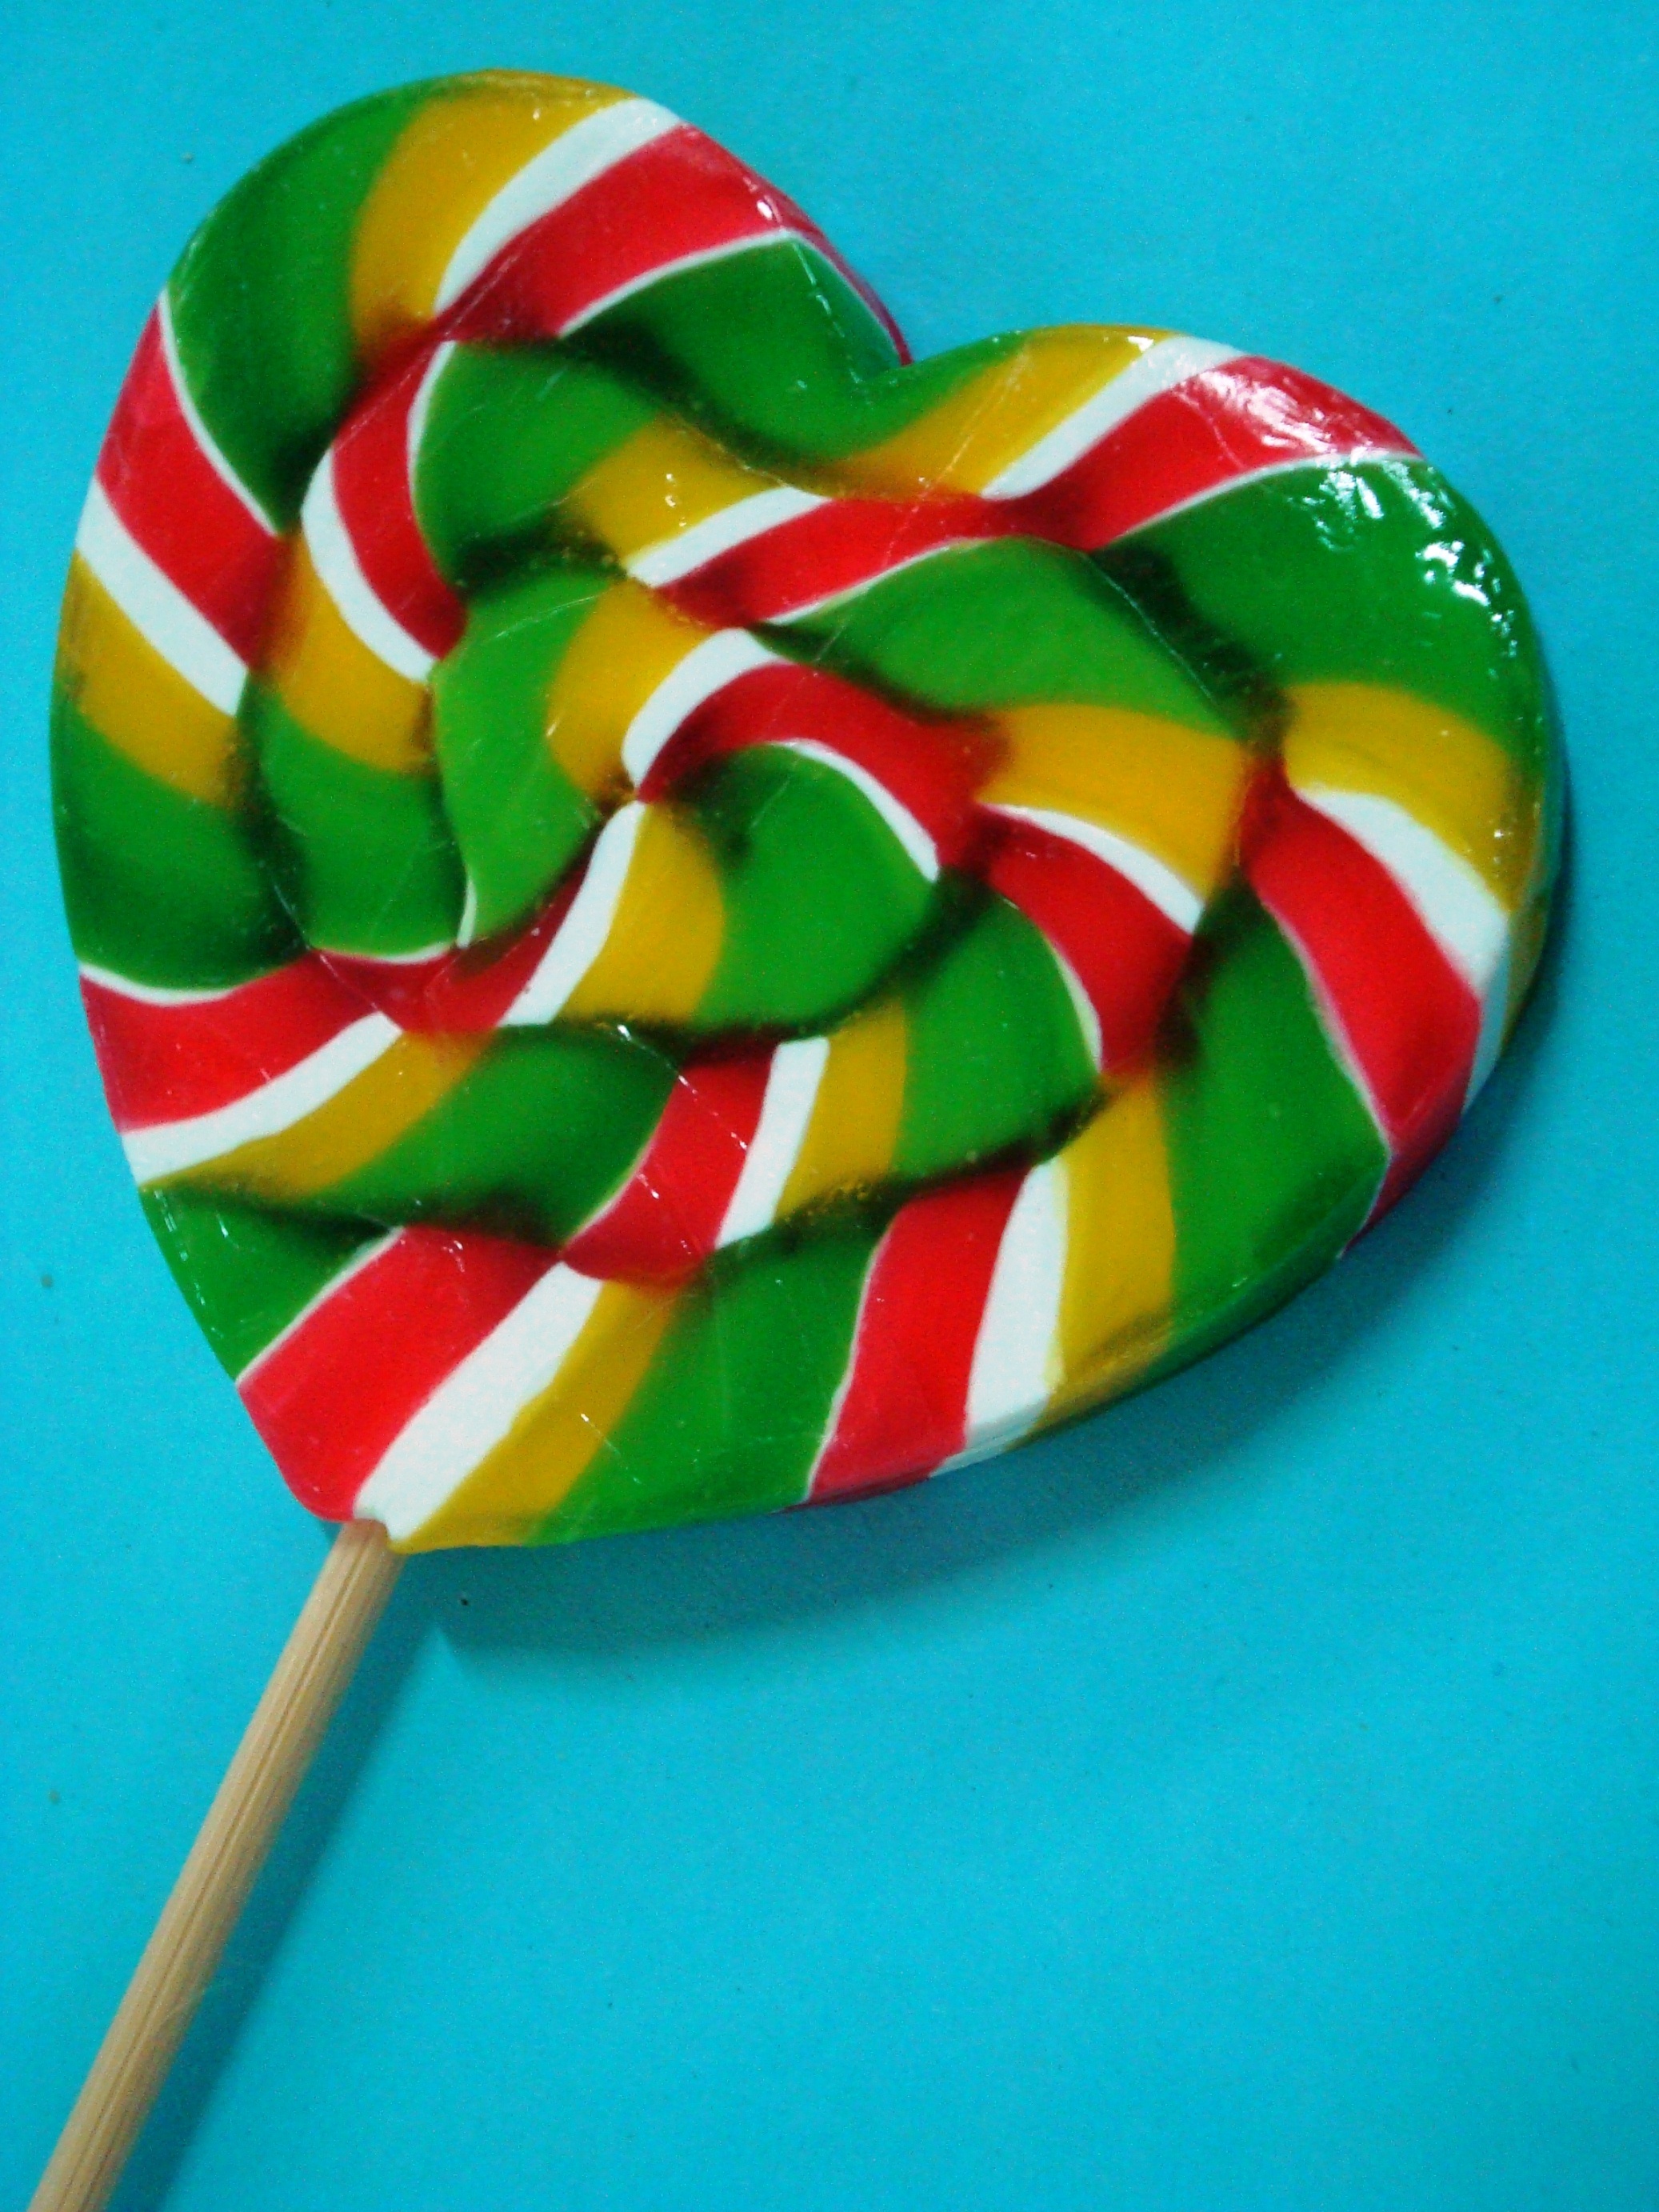 Colorful lollipop photo